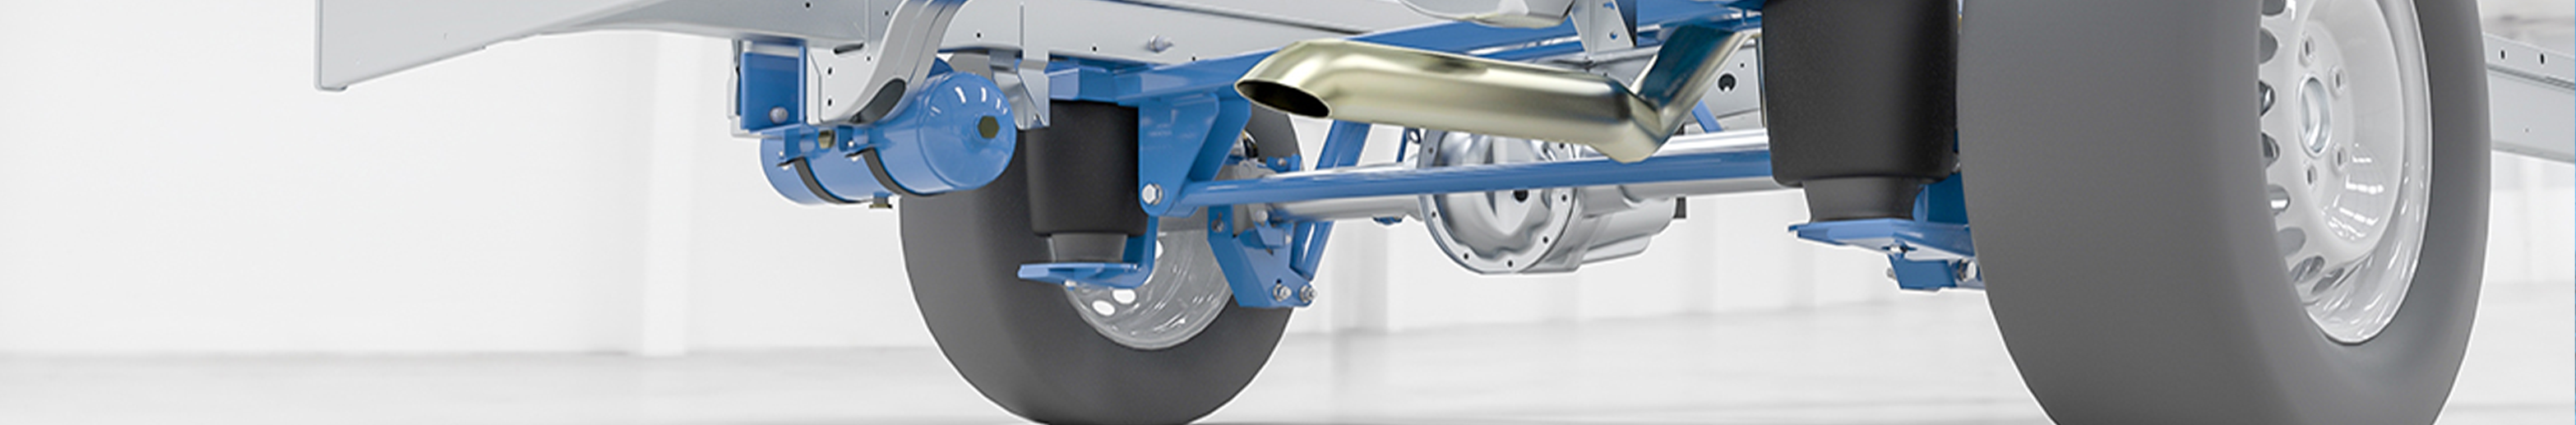 Full air suspension – VB-FullAir